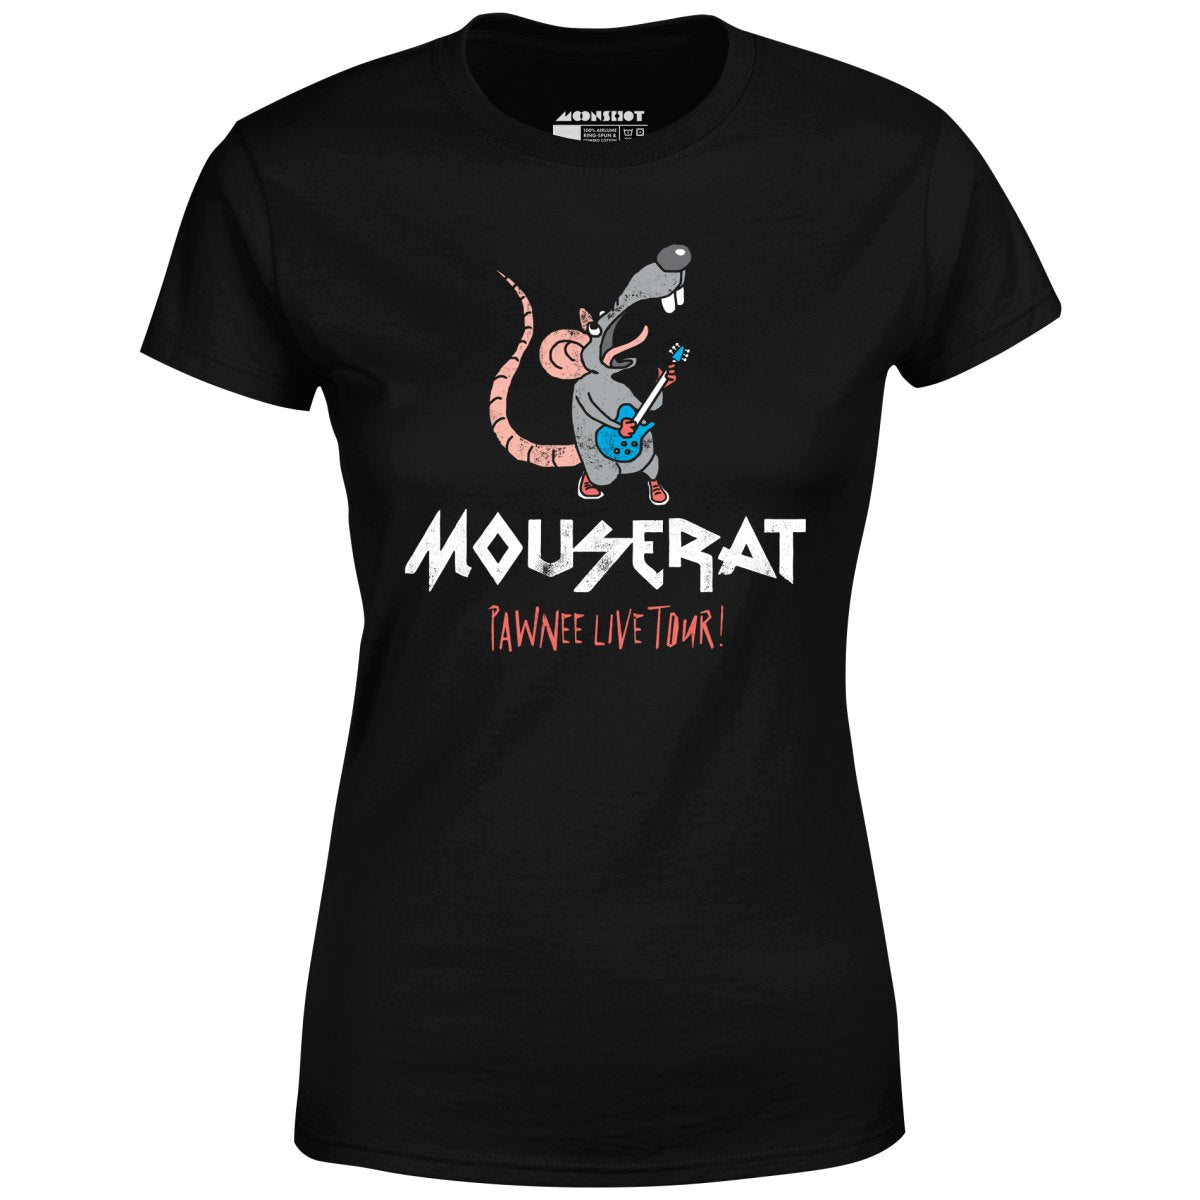 Mouse Rat - Pawnee Live Tour - Women's T-Shirt